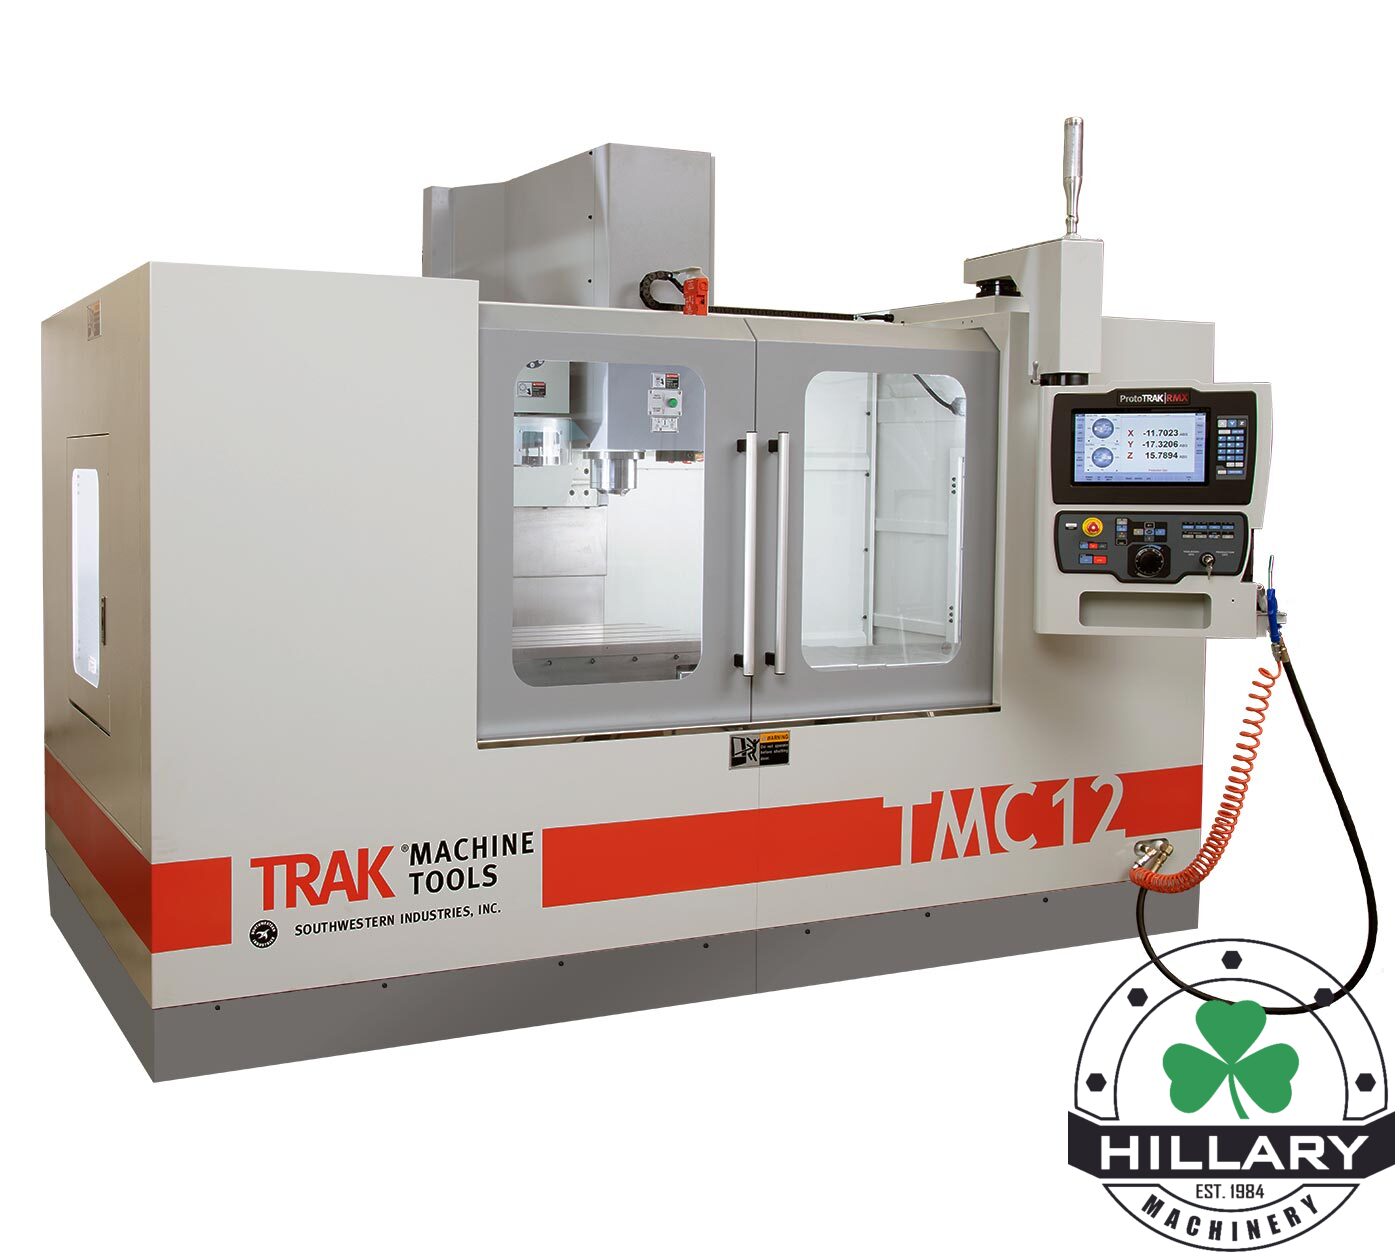 TRAK MACHINE TOOLS TMC12 Tool Room Mills | Hillary Machinery